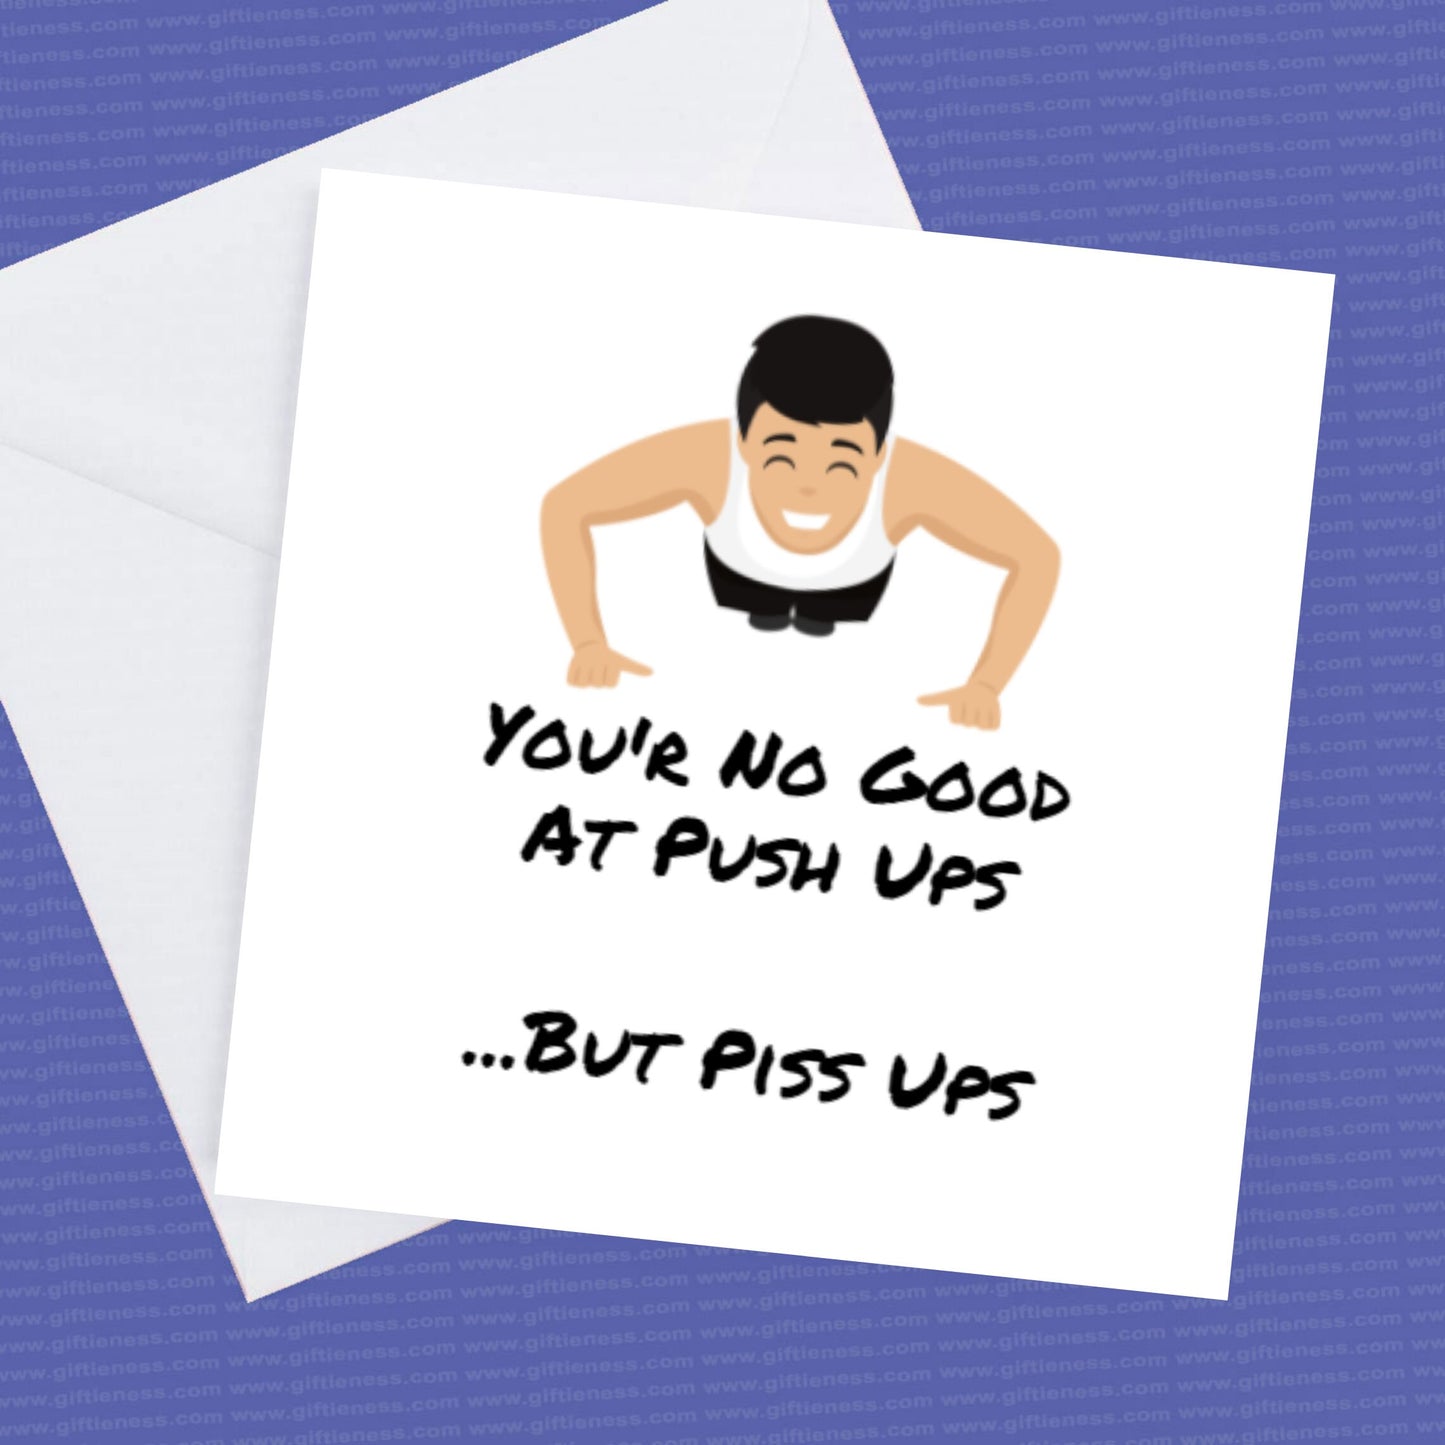 Birthday Card You're no good at pushups - but piss ups